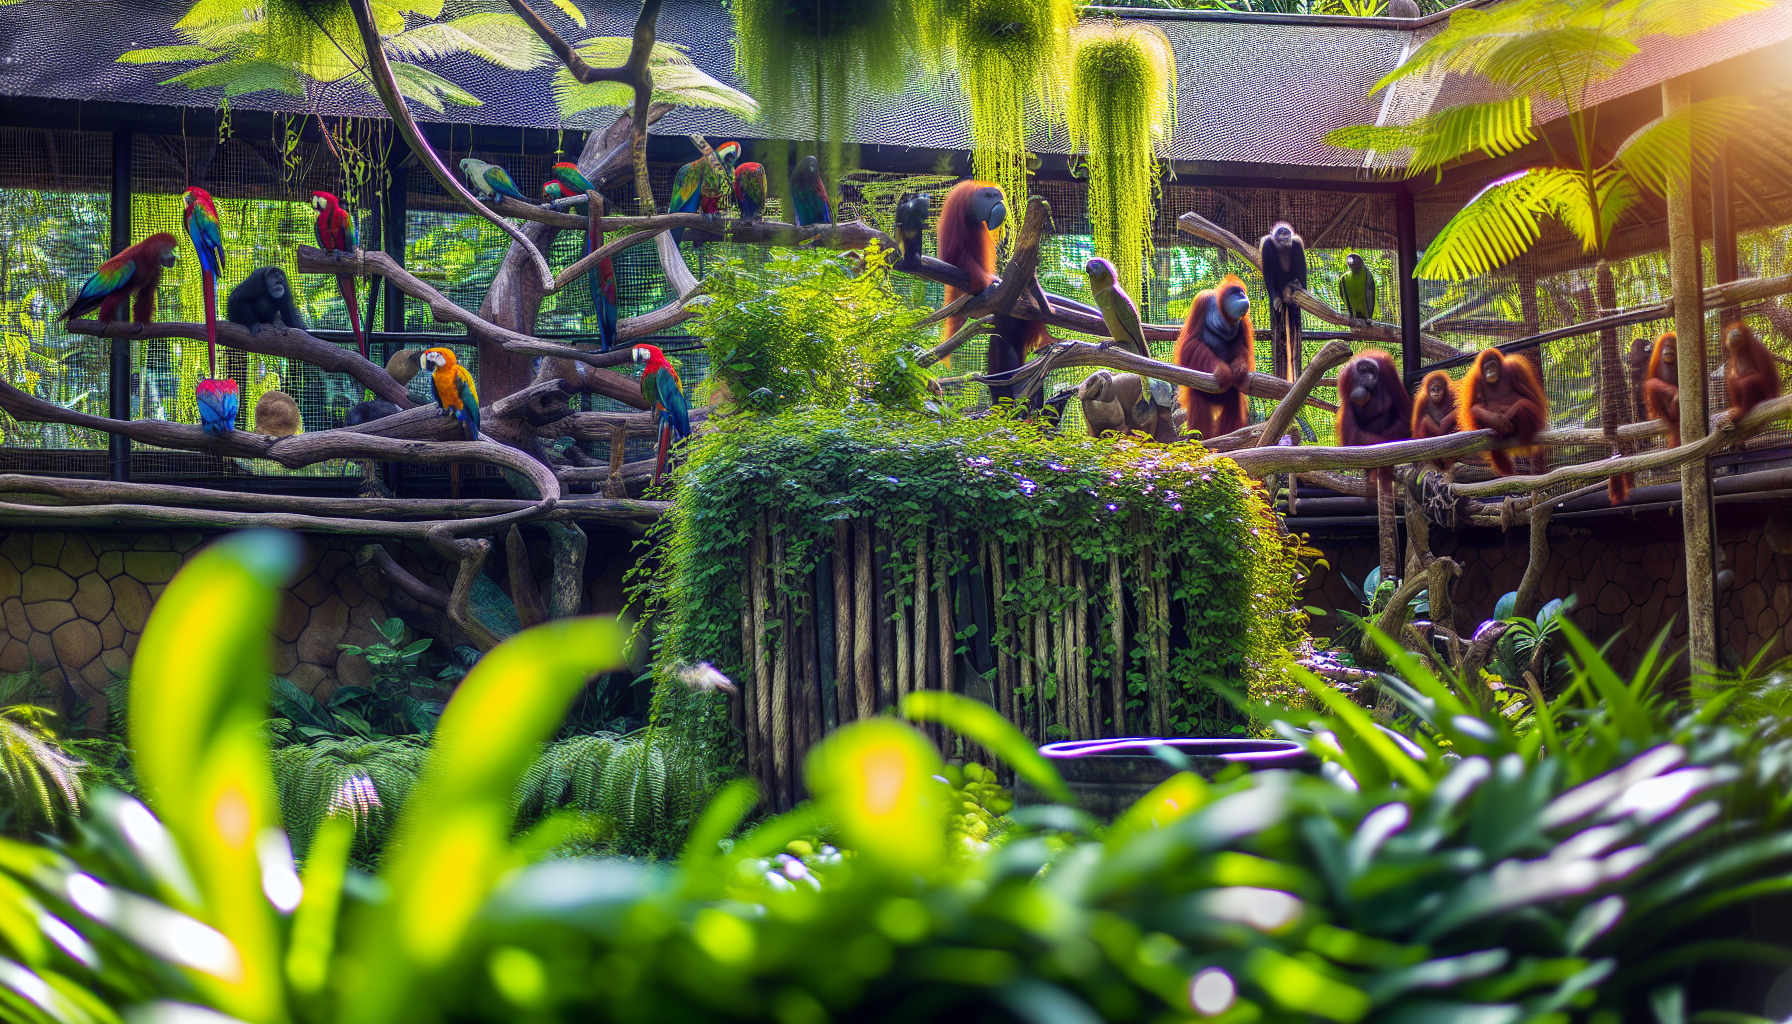 Exotic wildlife at Bali Zoo